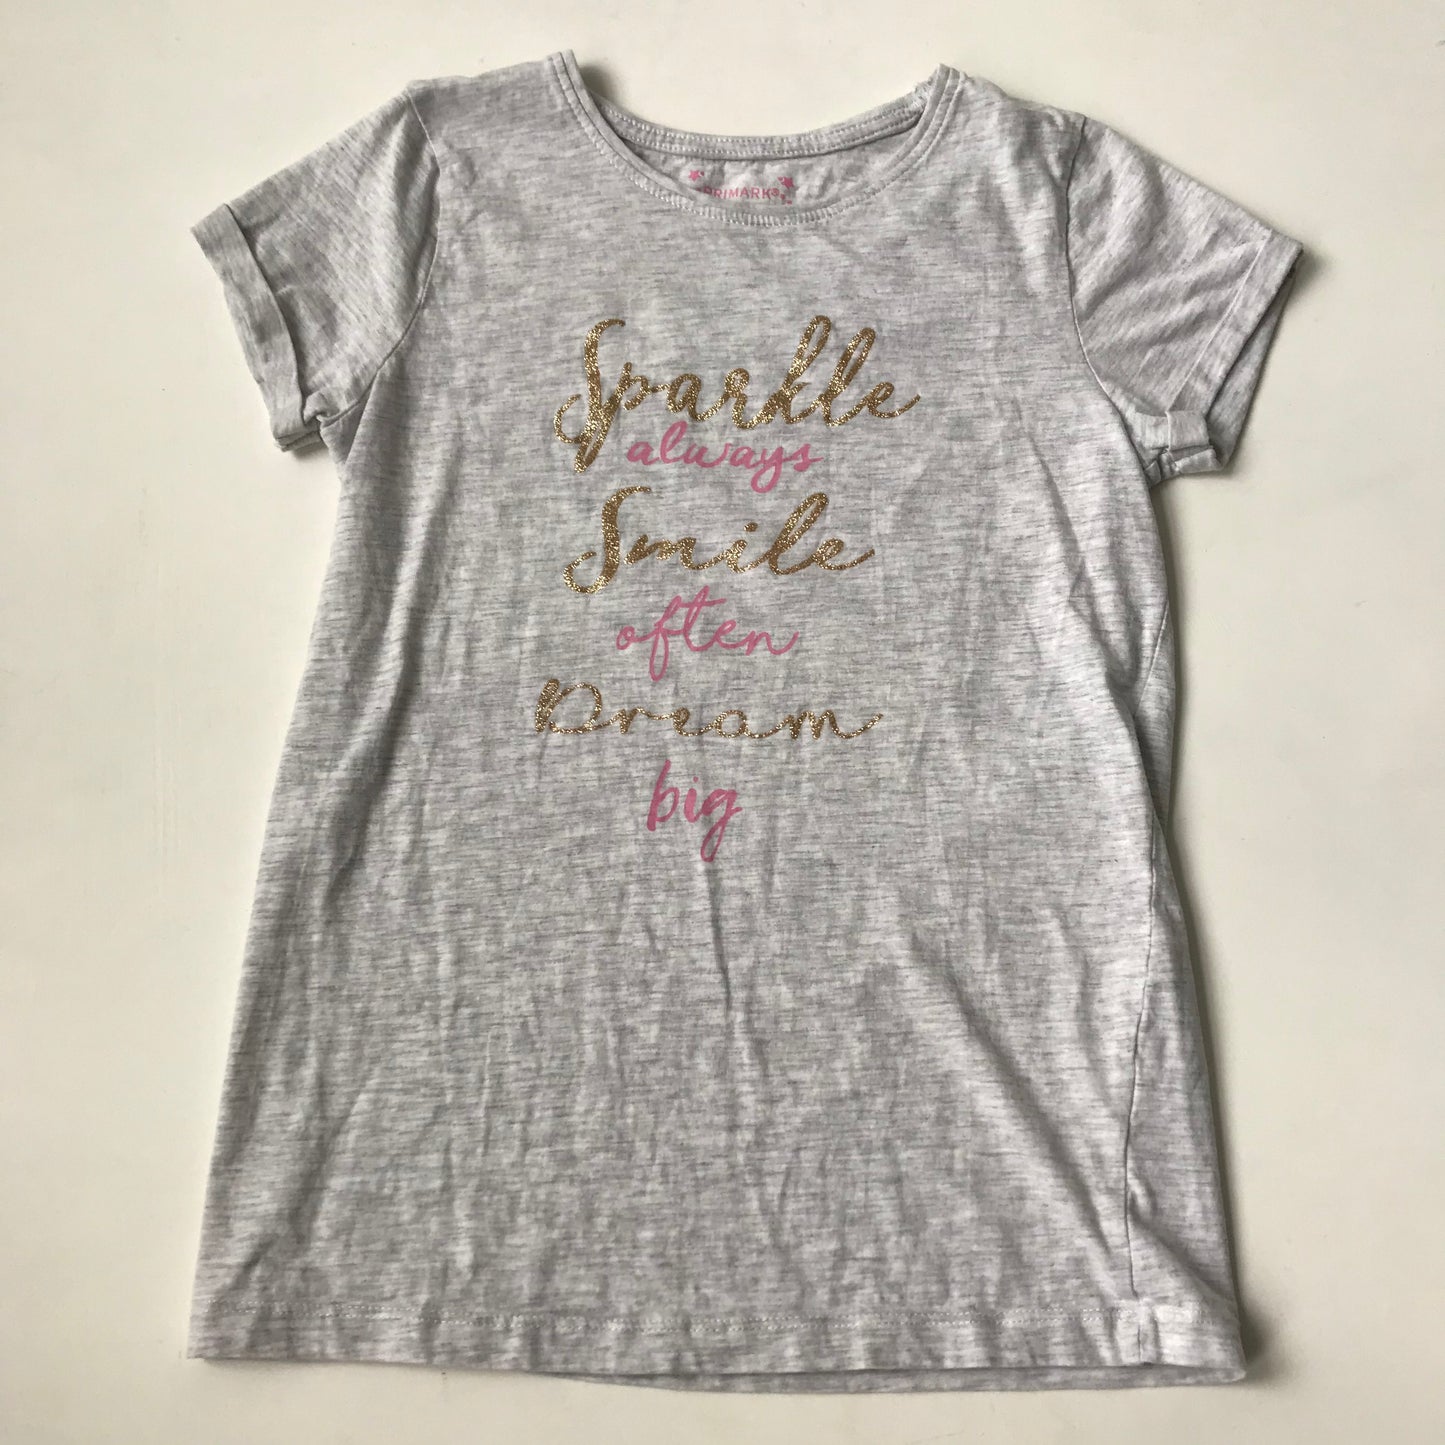 T-shirt - 'Sparkle Smile Dream' - Age 11